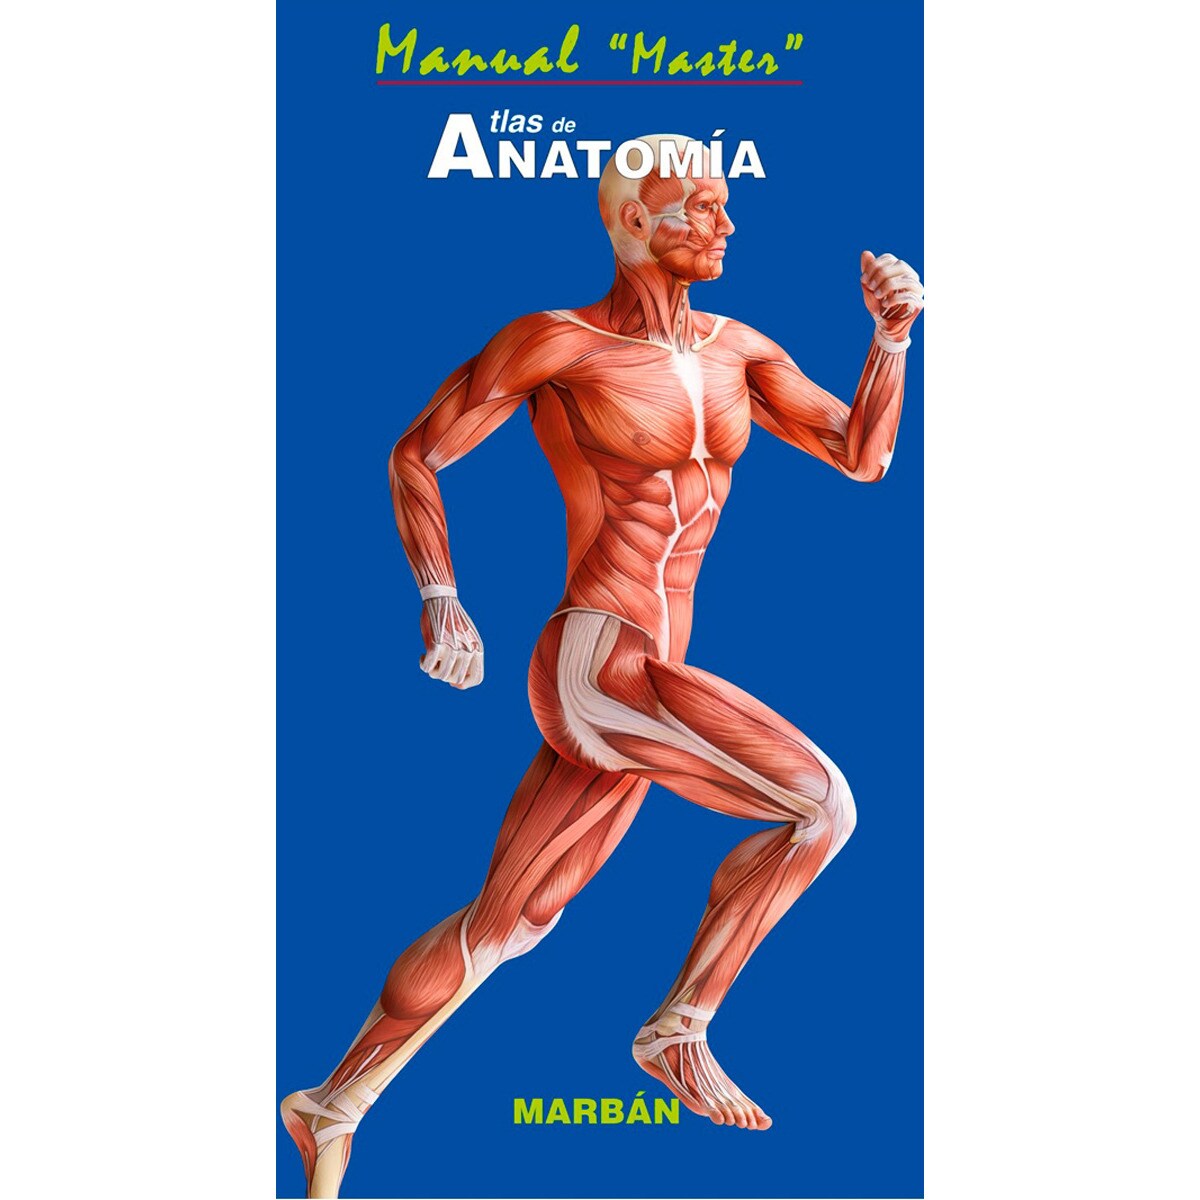 Master Atlas de Anatomía - Manual (¡Gorro o Gafas de REGALO!)